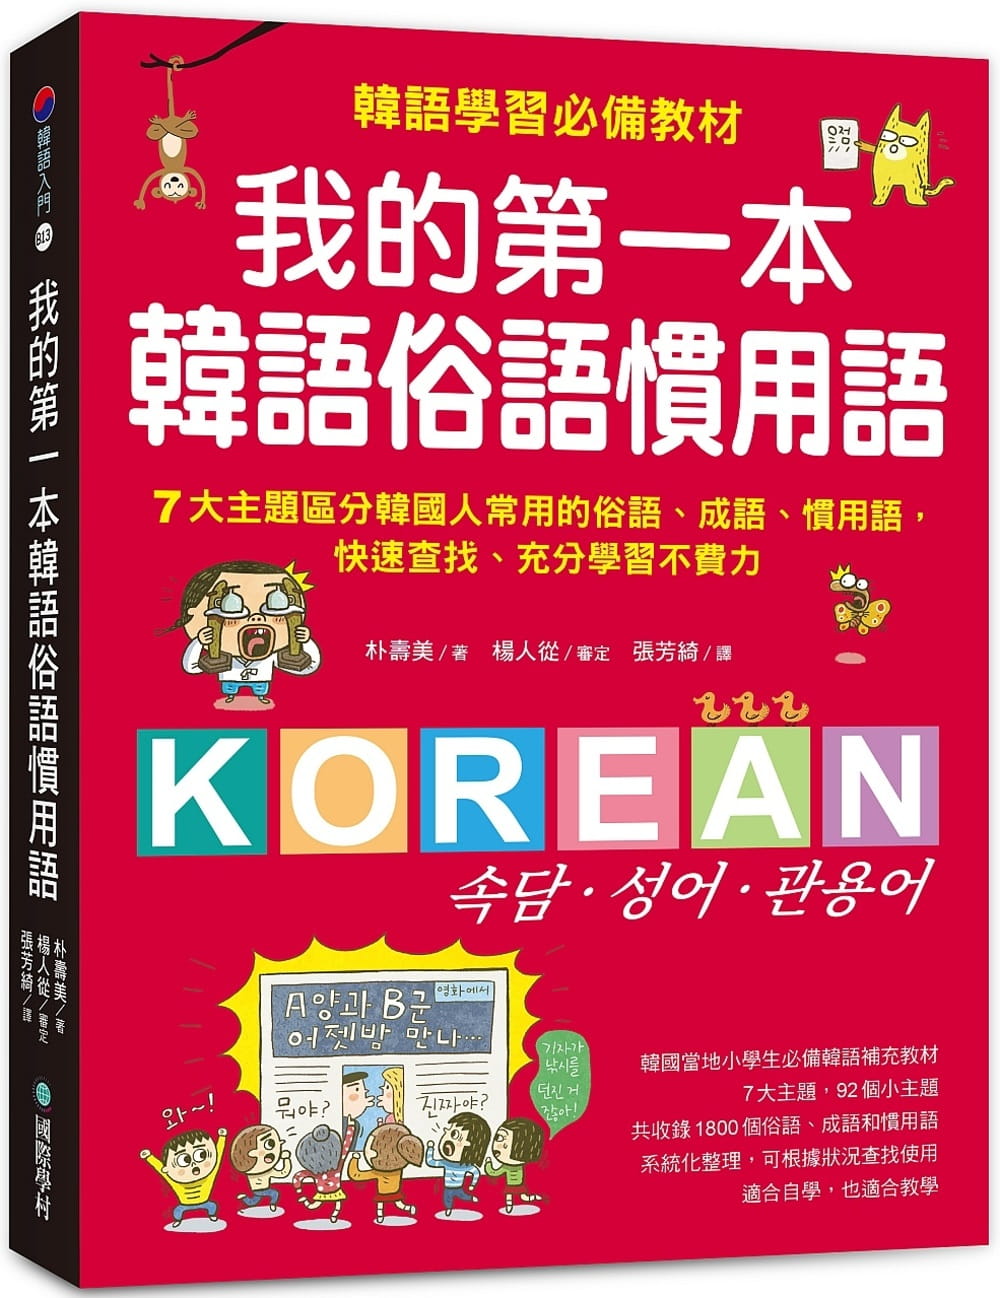 我的第一本韓語俗語慣用語：韓語學習必備教材！7大主題區分韓國人常用的俗語、成語、慣用語，快速查找、充分學習不費力！